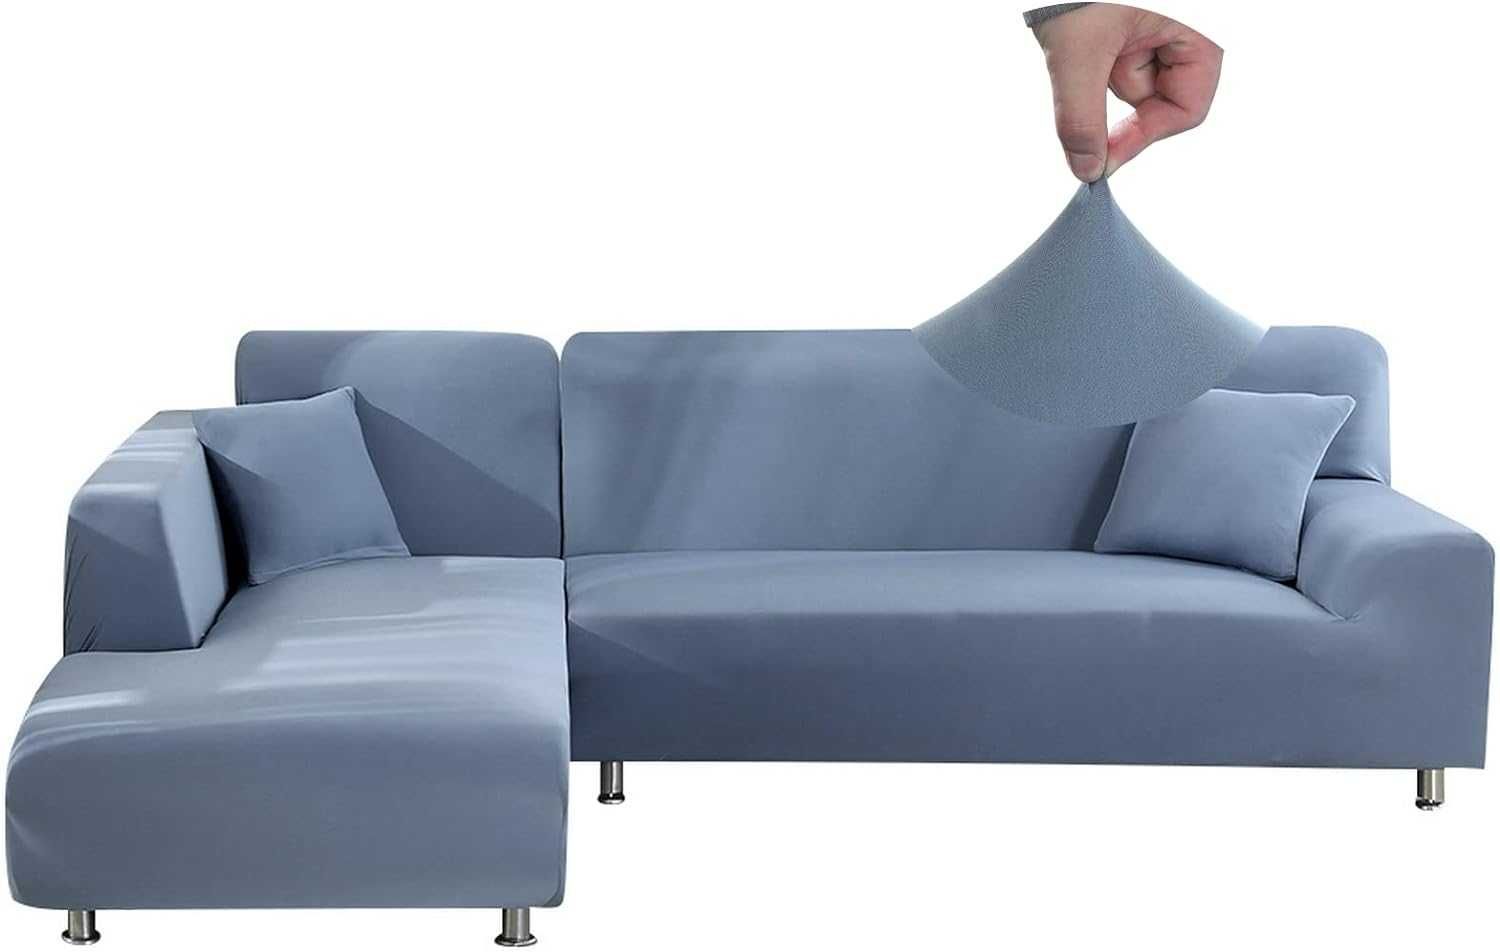 Nowy pokrowiec na sofę 2os / narzuta / niebieska !1630!